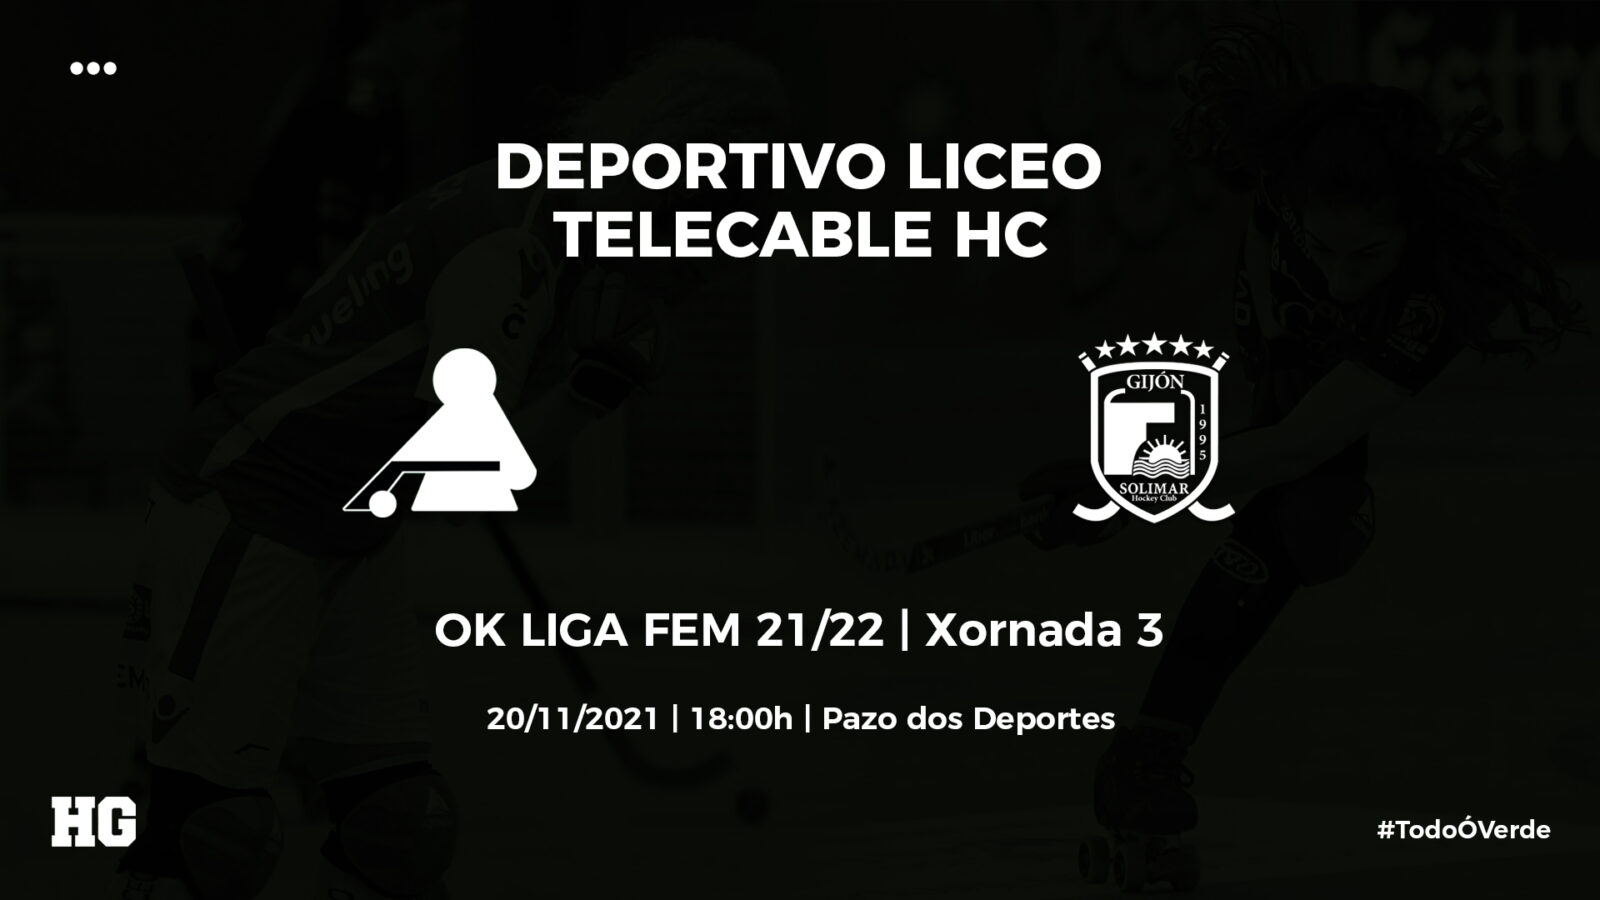 Deportivo Liceo – Telecable | ¡Apoya al equipo en un duelo de máximo nivel!